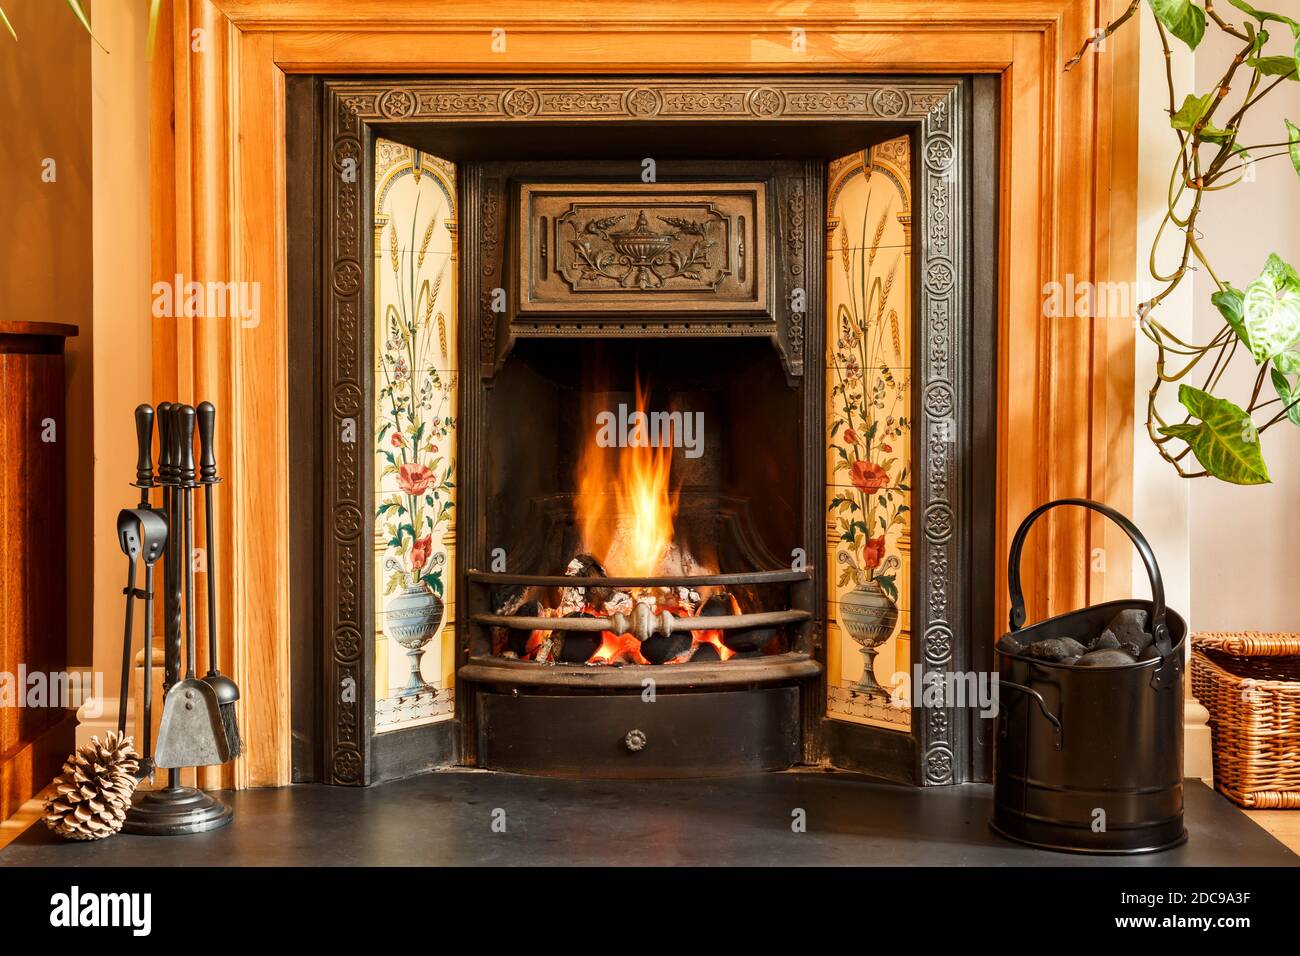 Nahaufnahme Kamin, traditionellen viktorianischen Stil offenen Kamin brennende Kohle in einem britischen Wohnzimmer Stockfoto